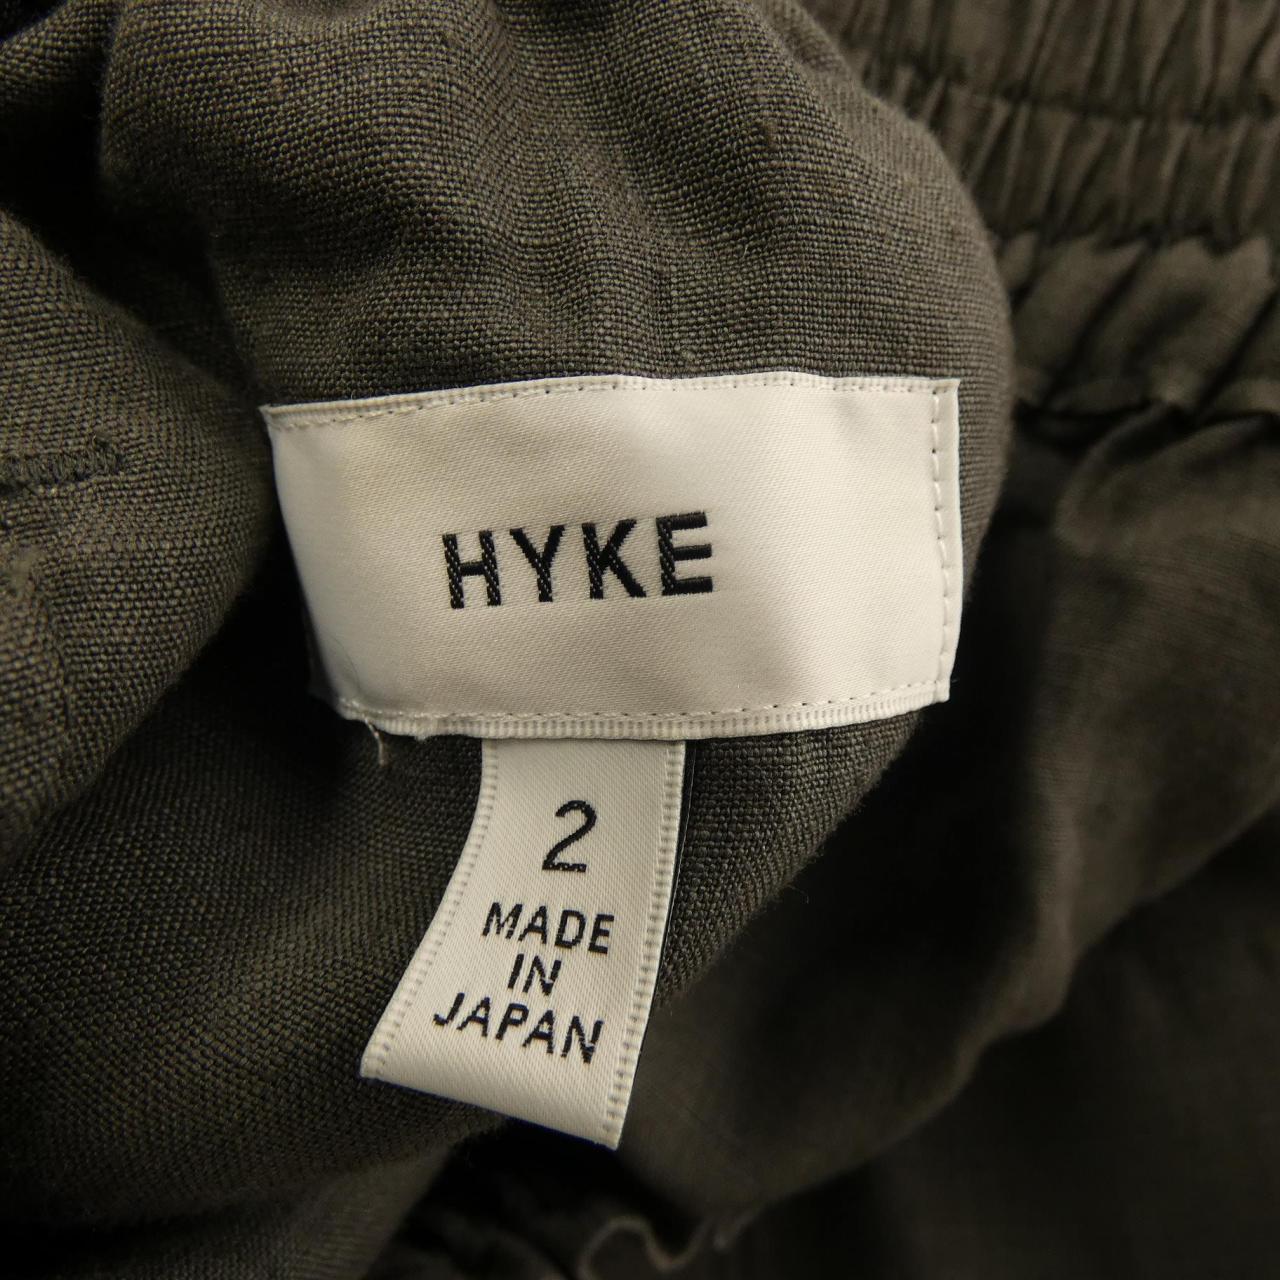 HYKE skirt